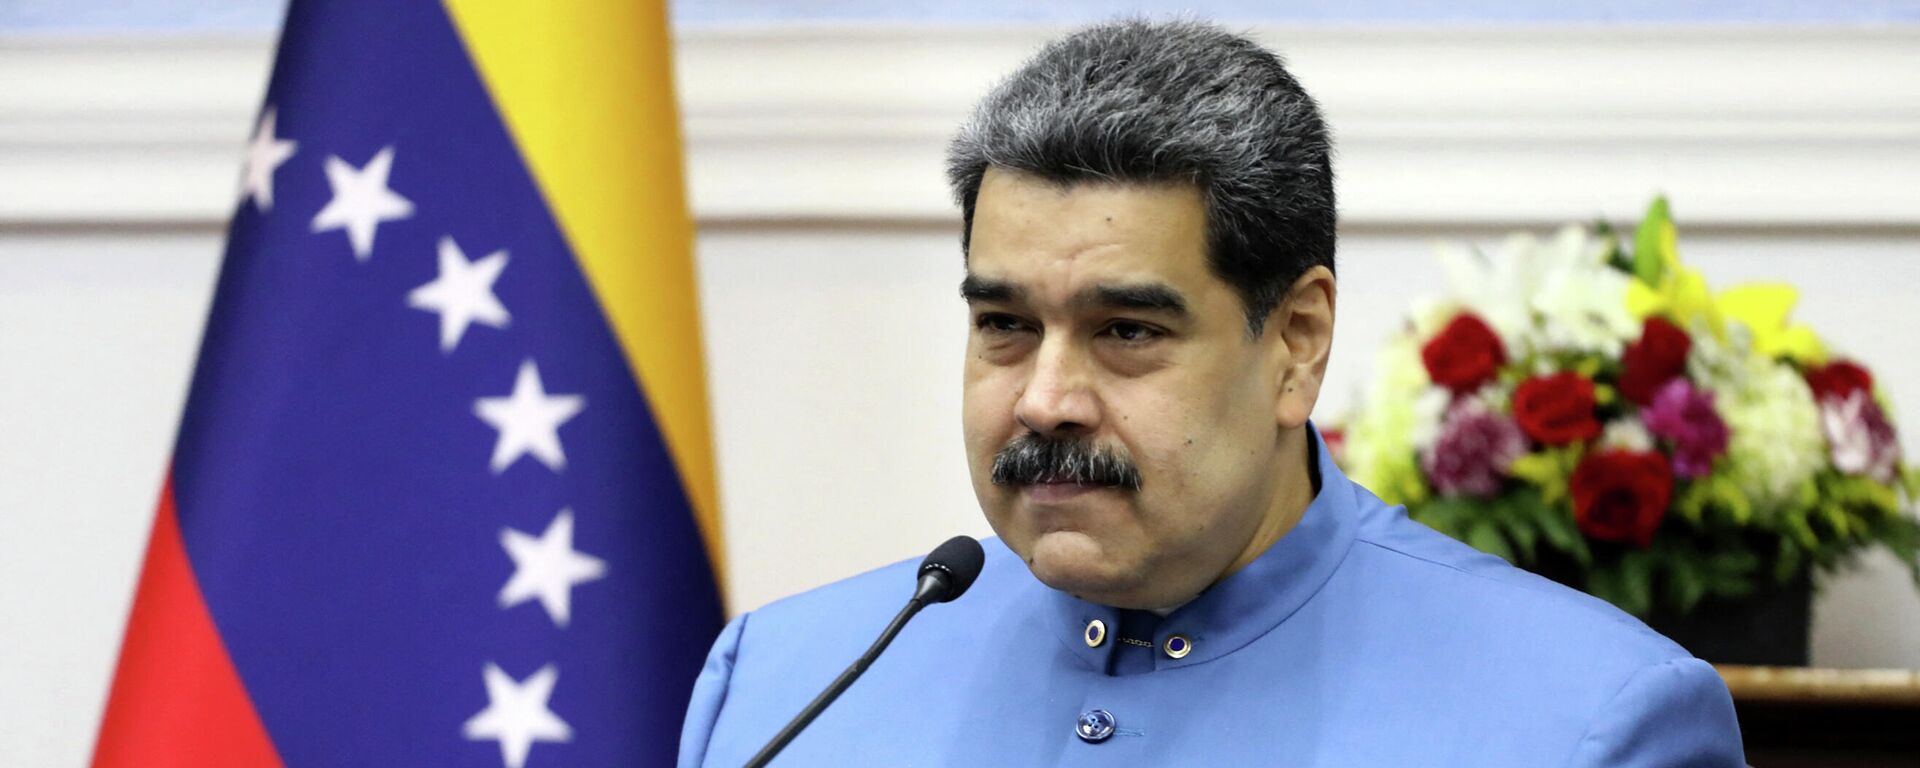 Nicolás Maduro, presidente de Venezuela - Sputnik Mundo, 1920, 20.09.2021